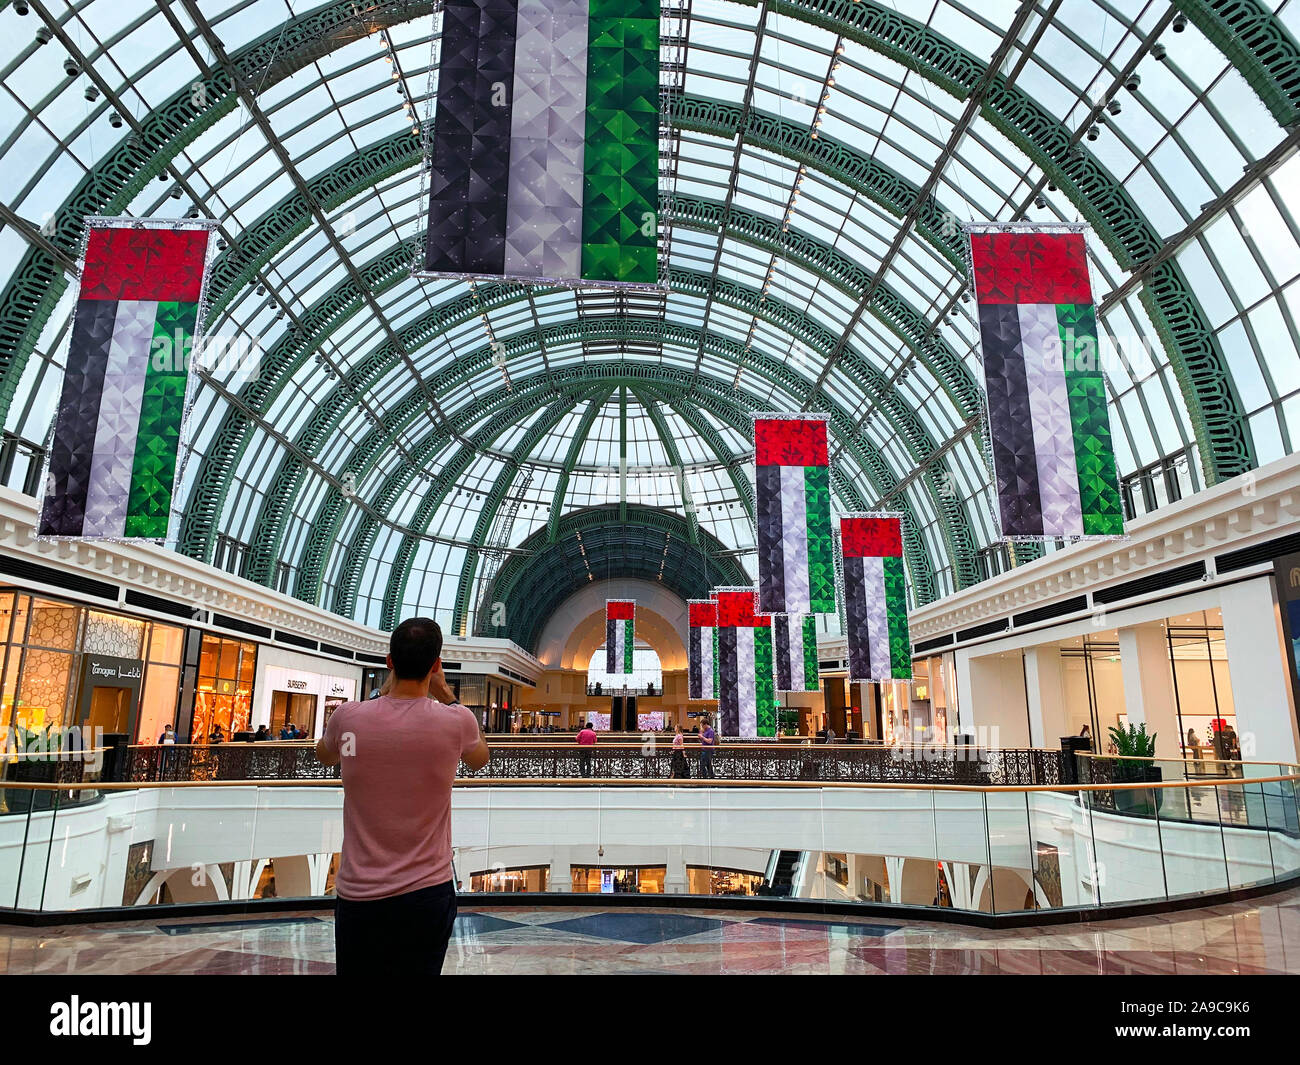 Dubaï / Emirats arabes unis - 10 novembre 2019 : décorations pour la Journée nationale des EAU dans le Mall of the Emirates. Décoration drapeaux nationaux des EAU. Jour de l'indépendance. L'homme est tak Banque D'Images